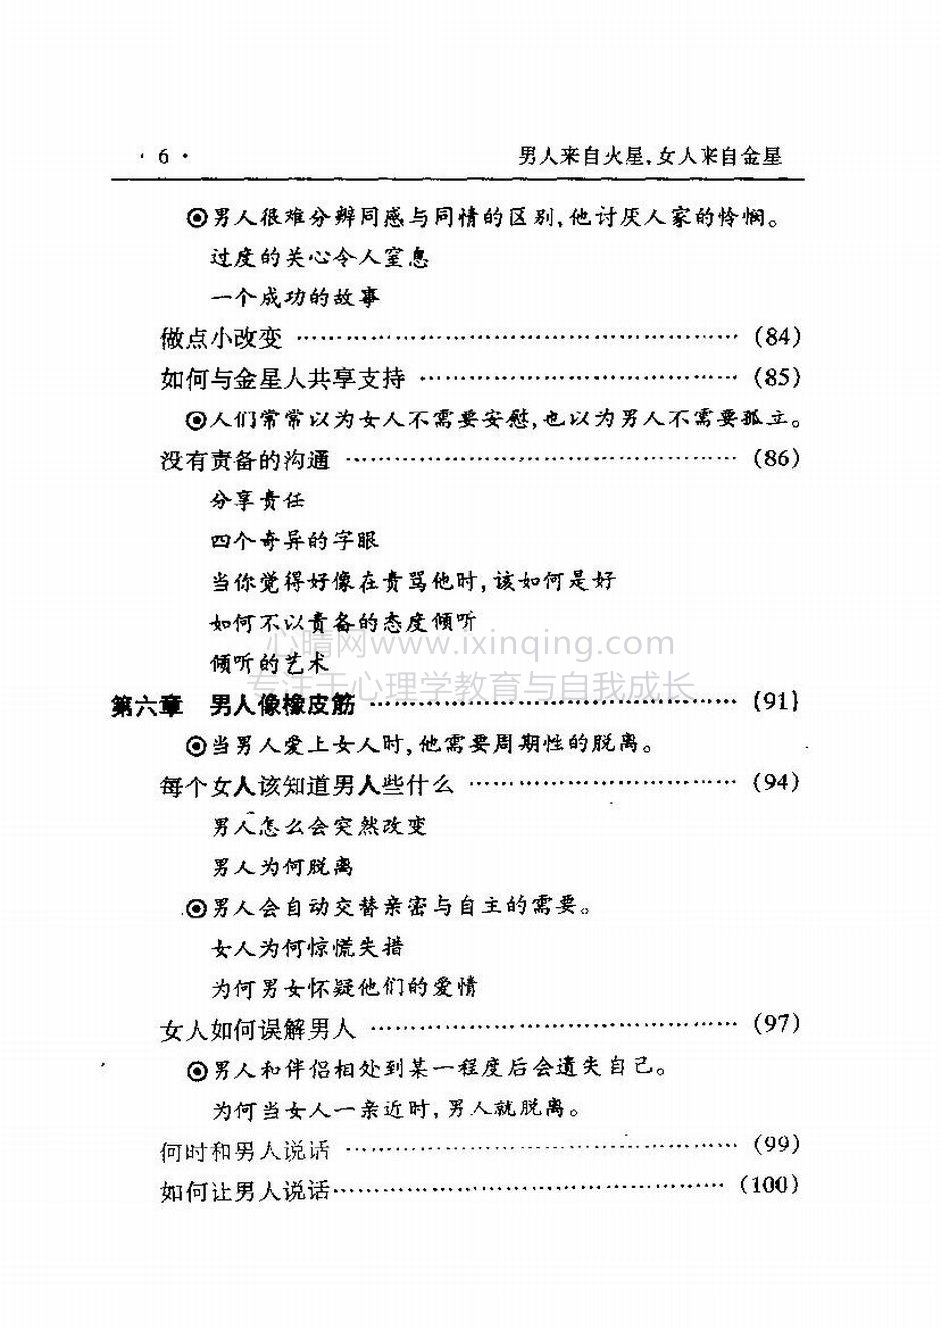 封面、原序、译序、中文版出版前言(25)